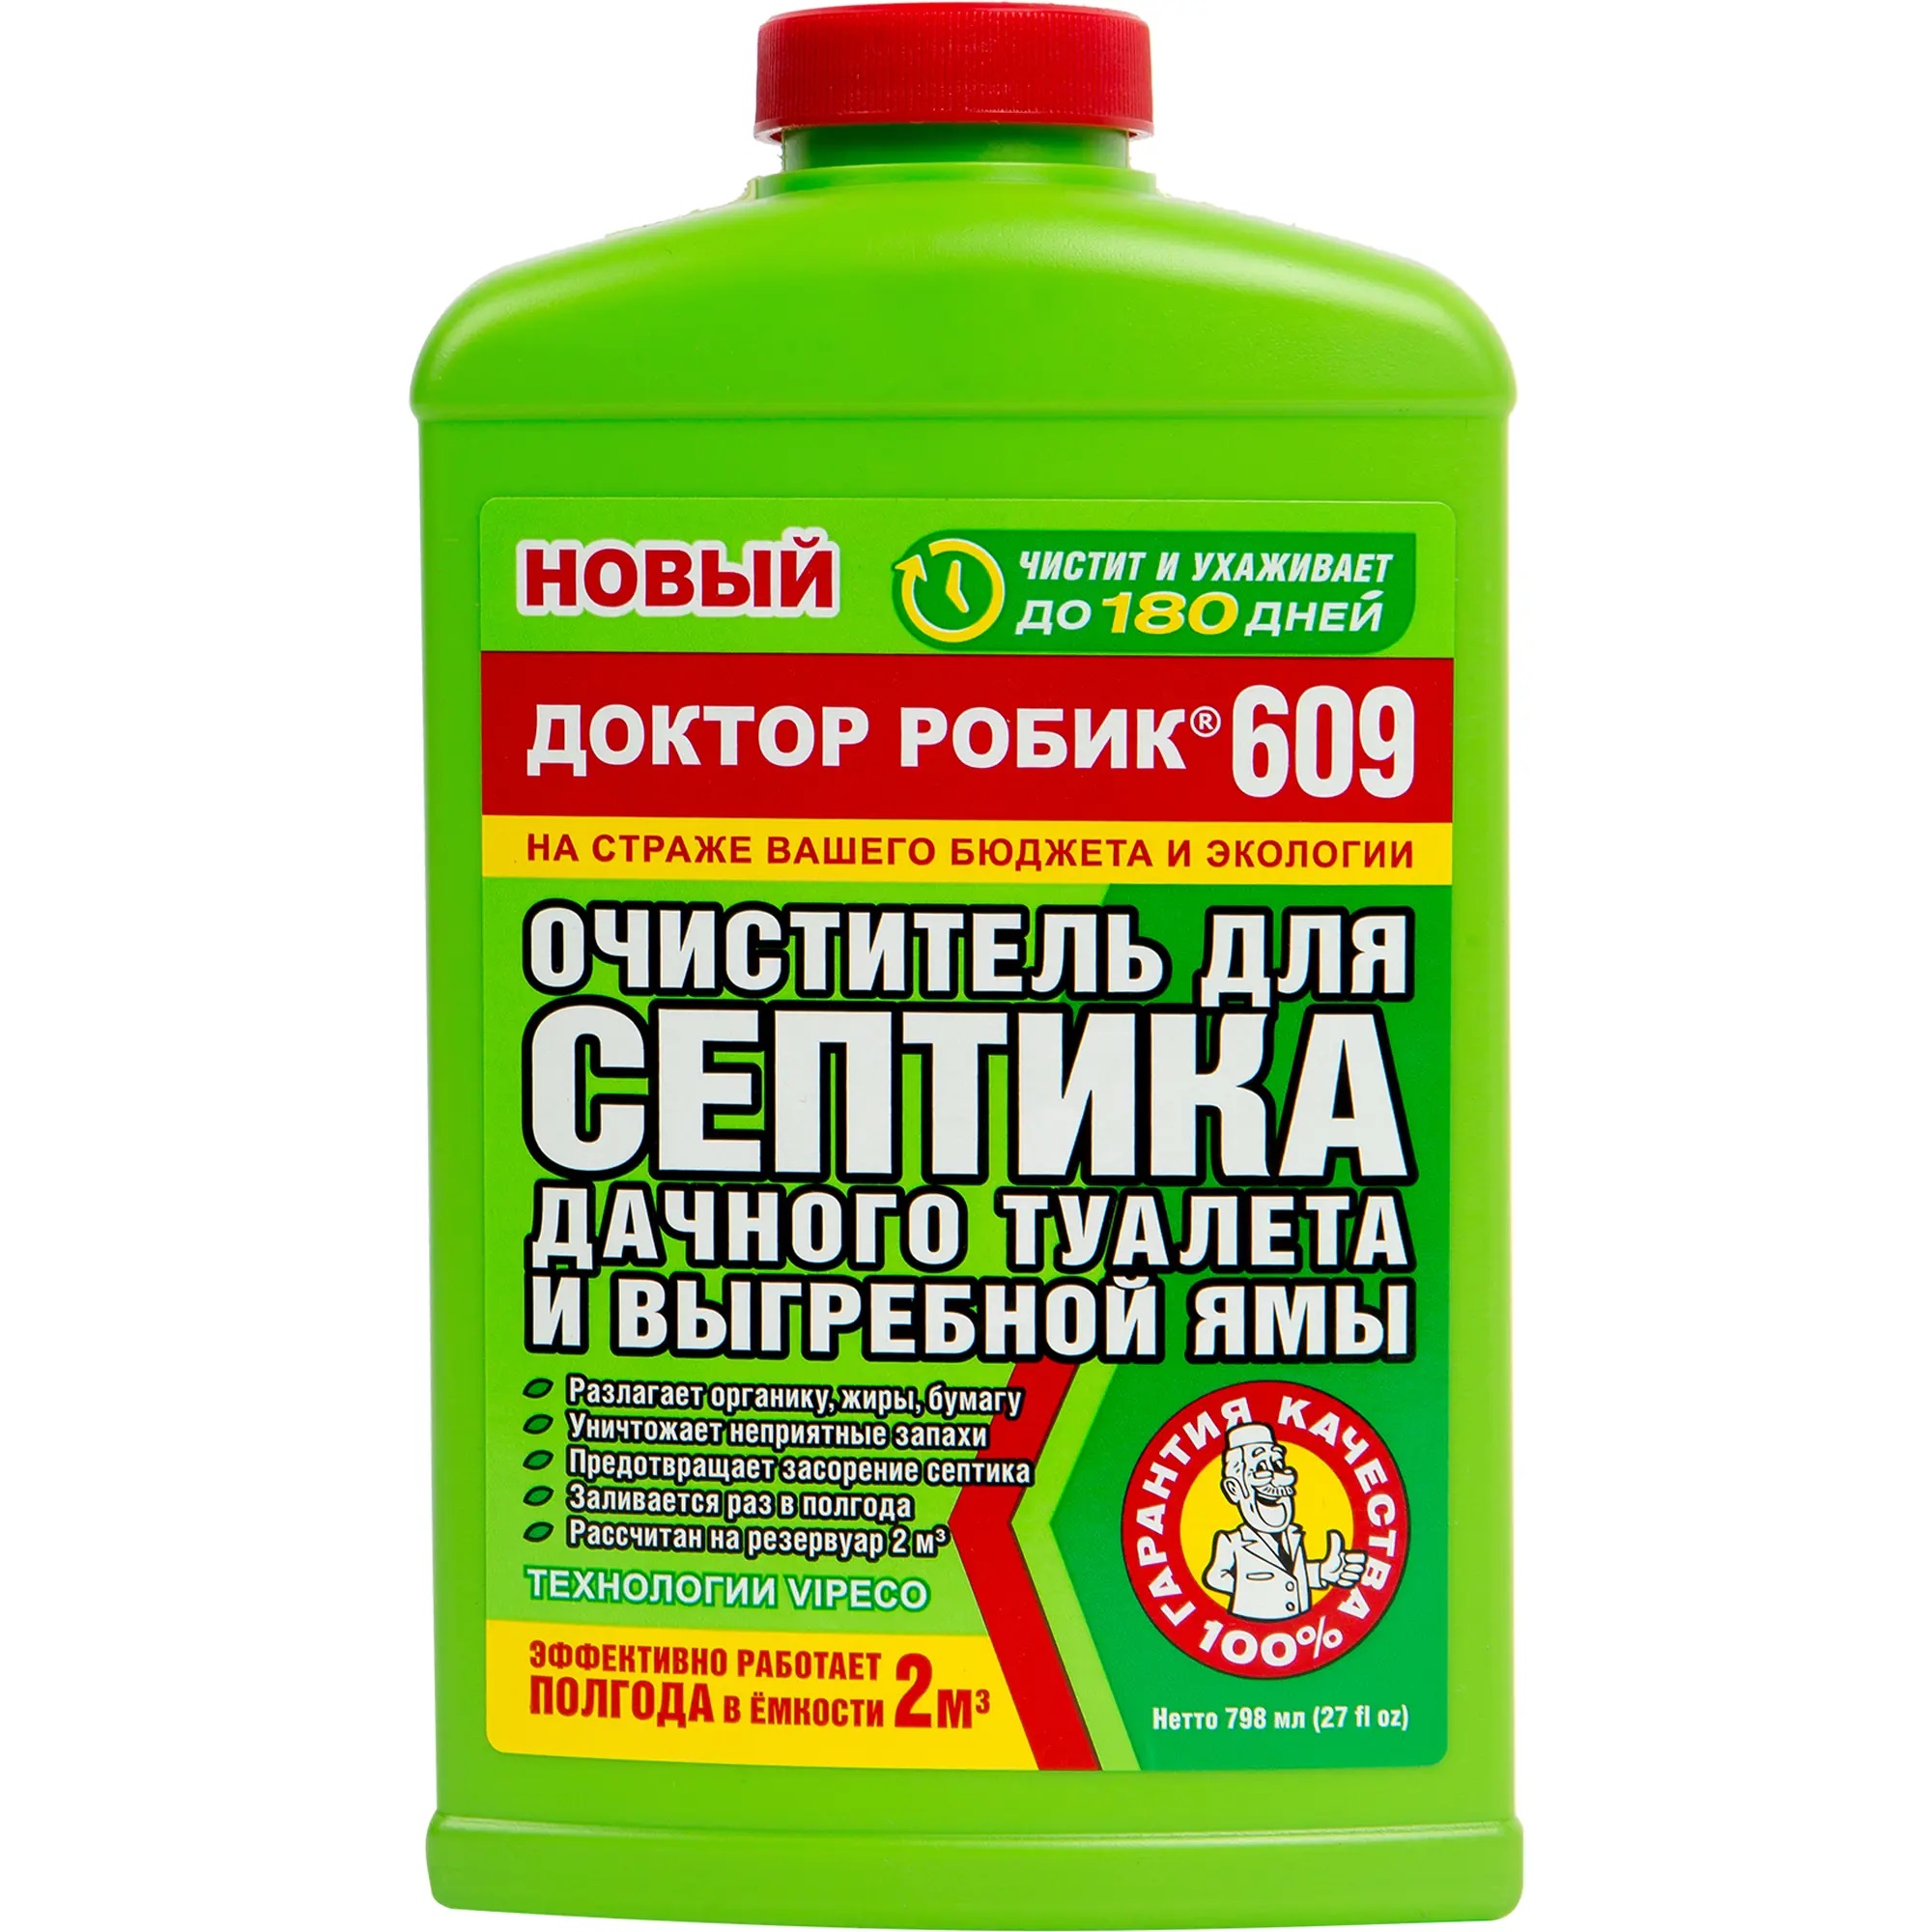 Очиститель для септика и дачного туалета Доктор Робик 609 зеленый пакет средство для дачного туалета 30 гр доктор робик